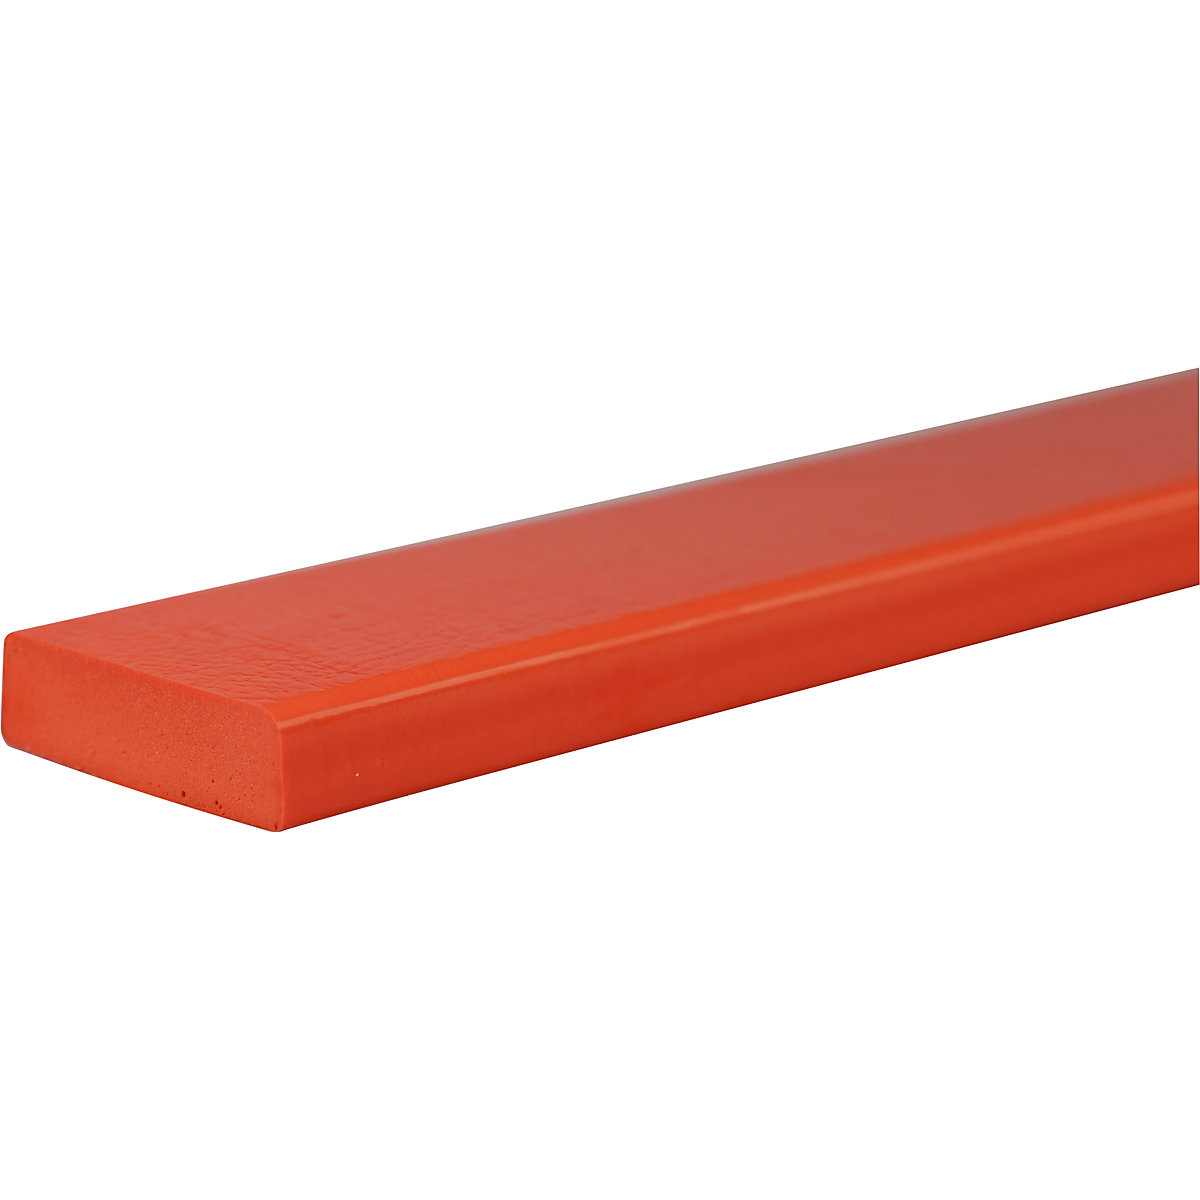 SHG – Proteção de superfícies Knuffi®, tipo S, unidade de 1 m, vermelho